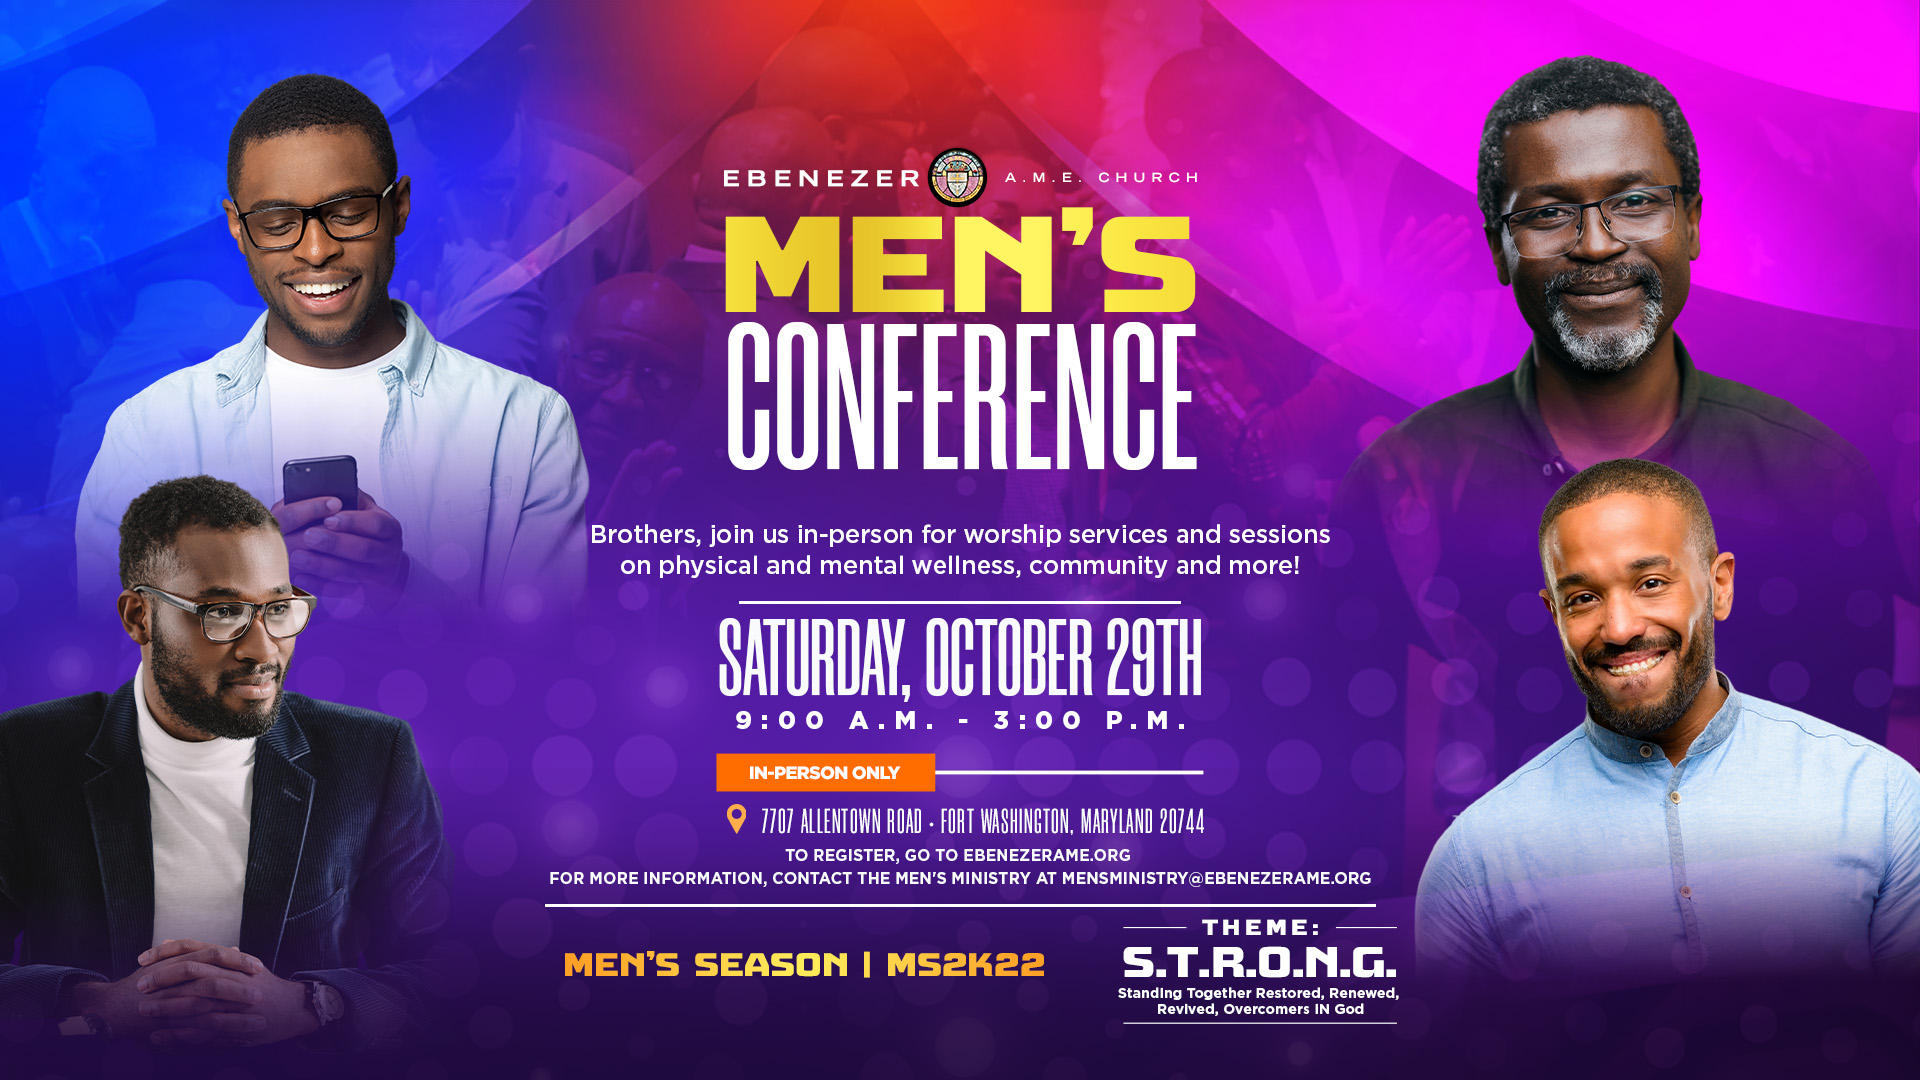 2022 Men’s Conference (S.T.R.O.N.G.) Ebenezer A.M.E. Church